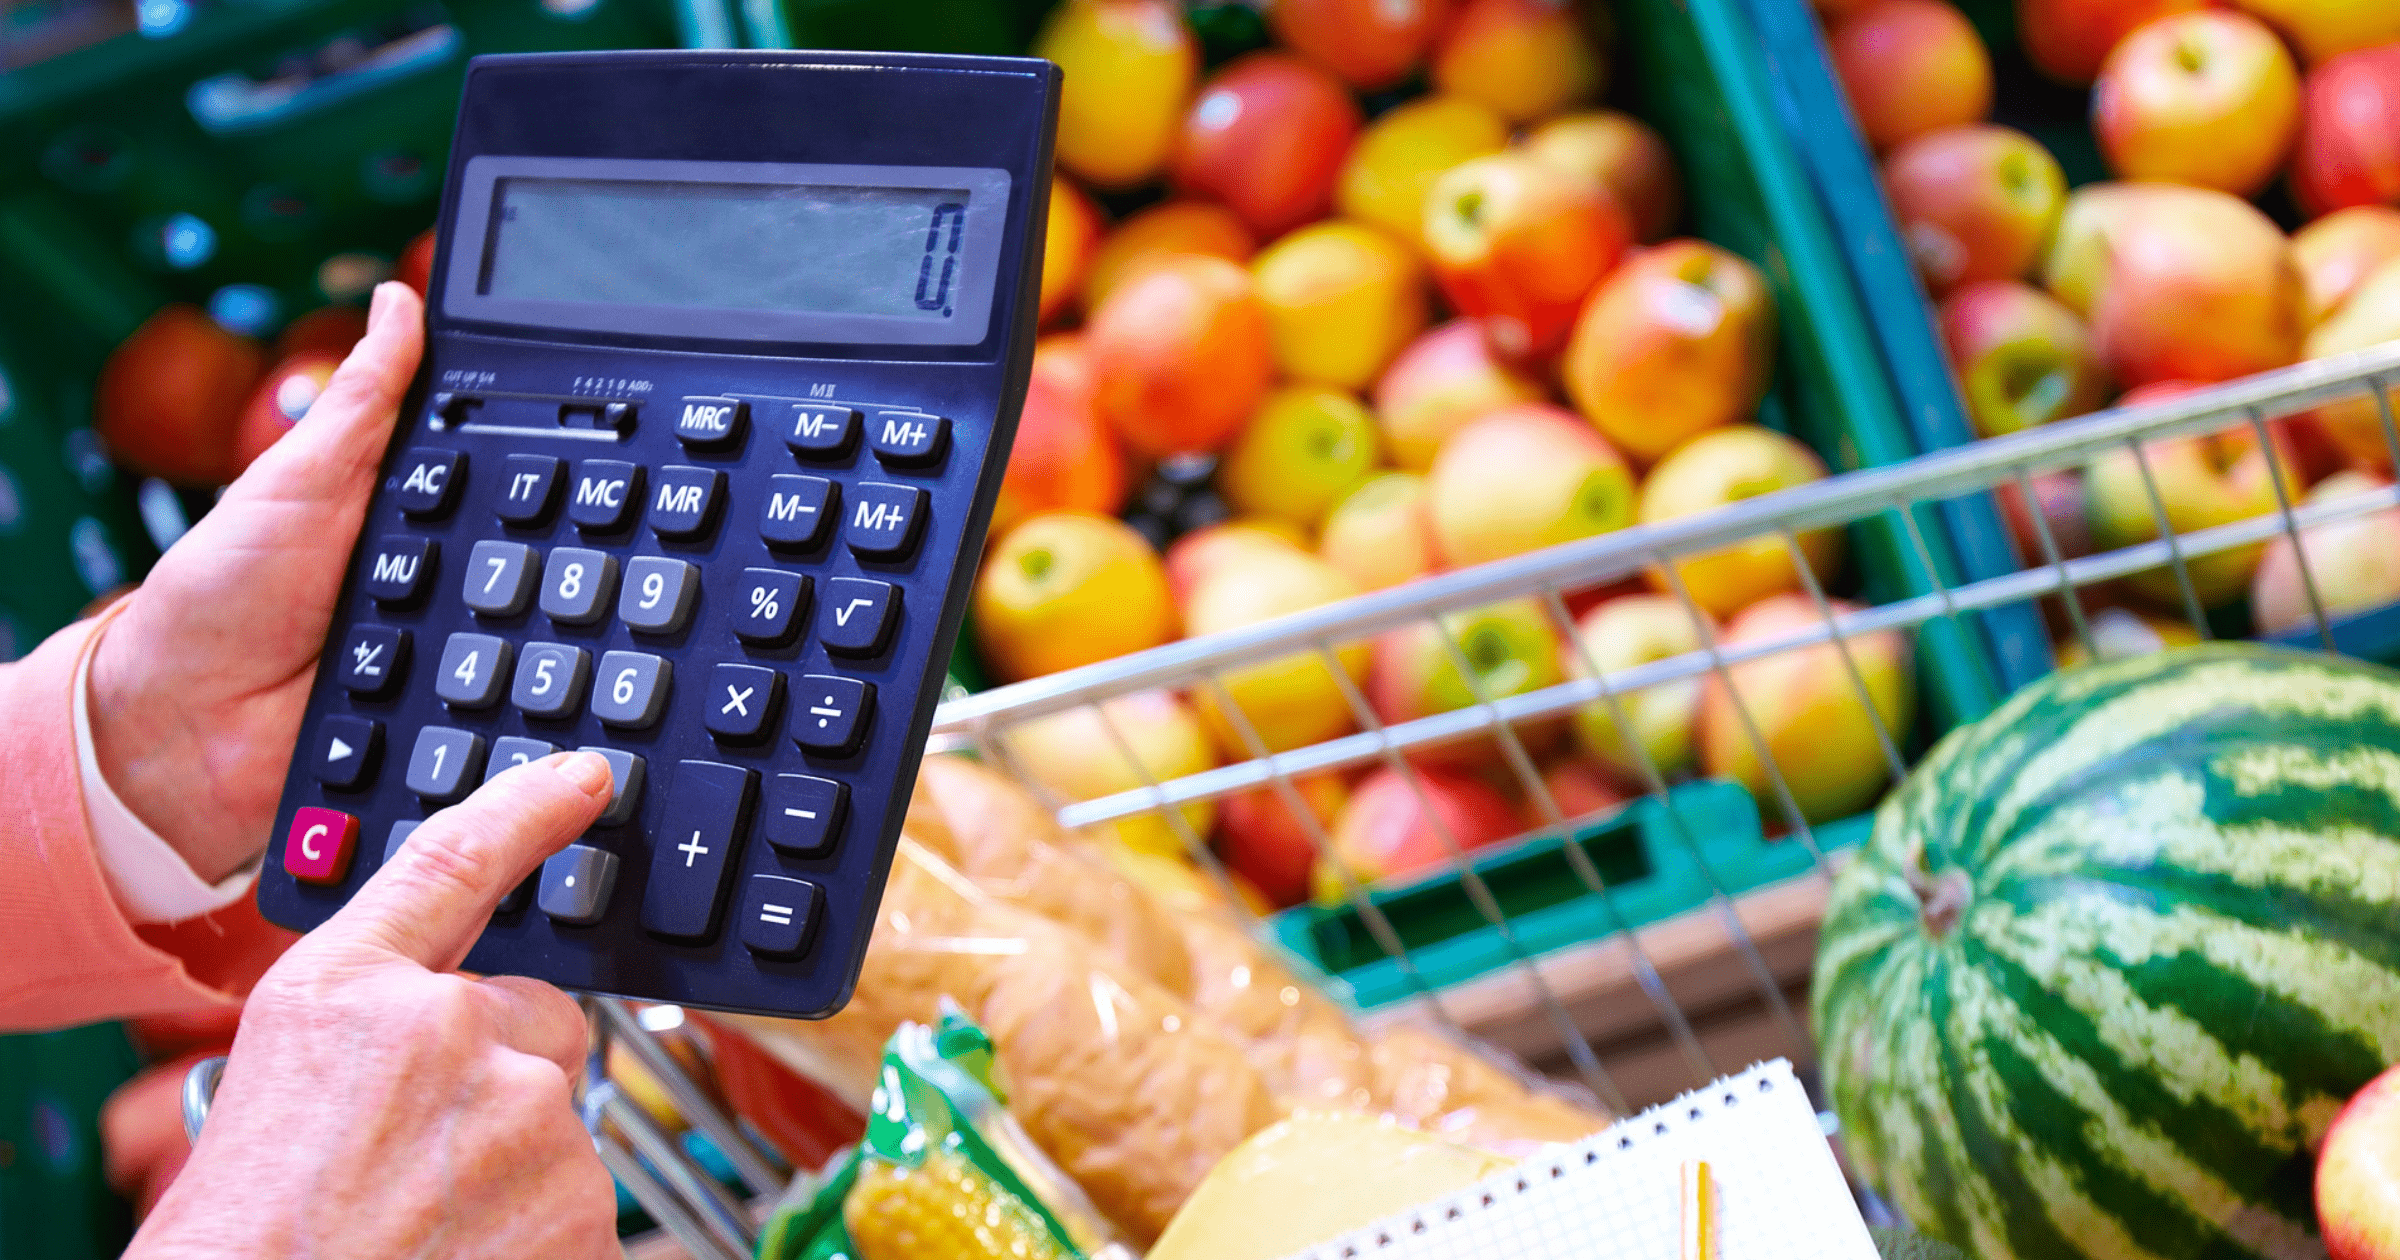 За четыре месяца инфляция достигла 7.1% — свежие овощи подорожали сразу на 30%